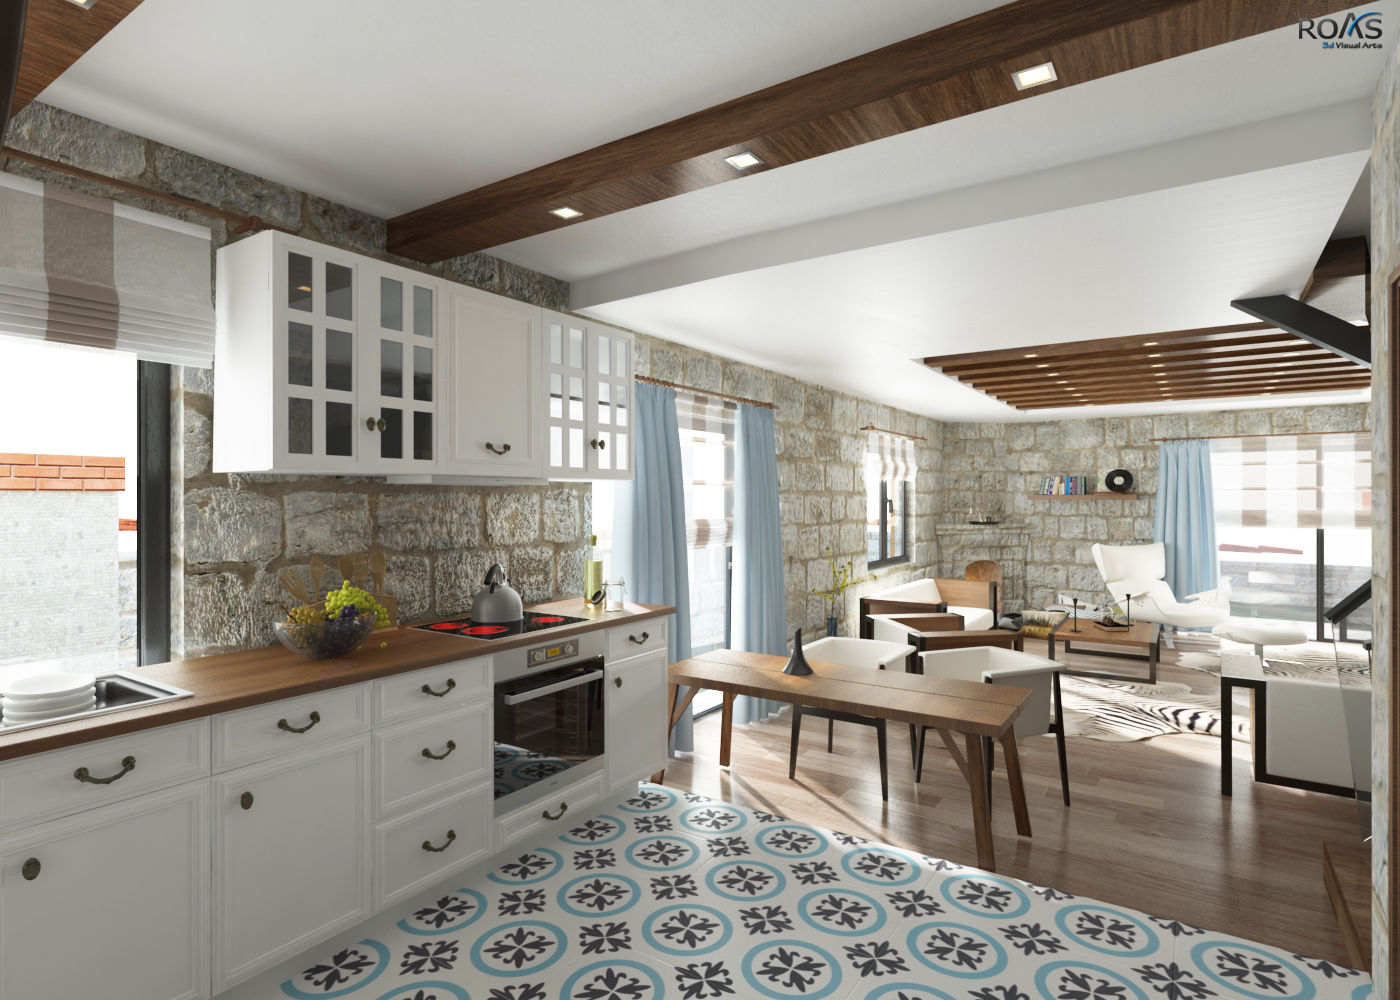 INTERIOR DESIGN FOR IMAR INSAAT, ROAS ARCHITECTURE 3D DESIGN AGENCY ROAS ARCHITECTURE 3D DESIGN AGENCY Mediterranean style kitchen